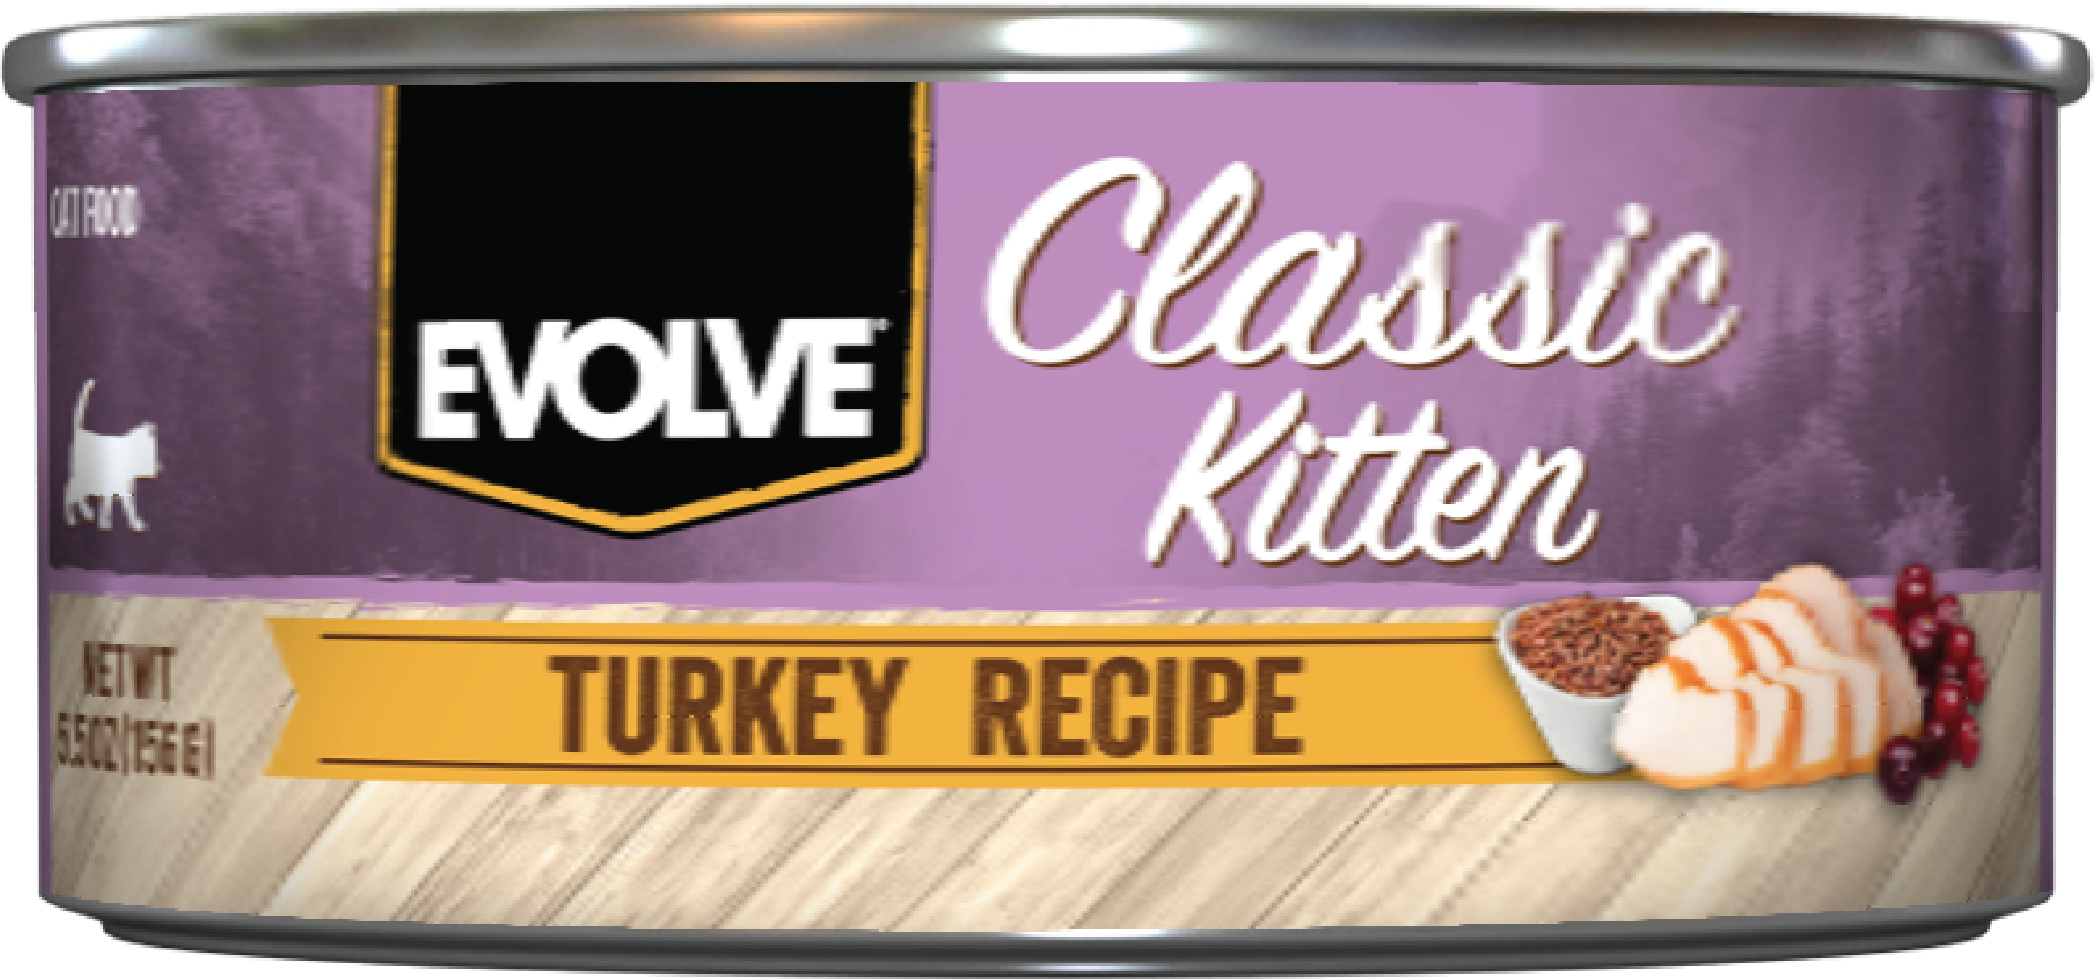 Evolve Classic Kitten Turkey Recipe Kitten